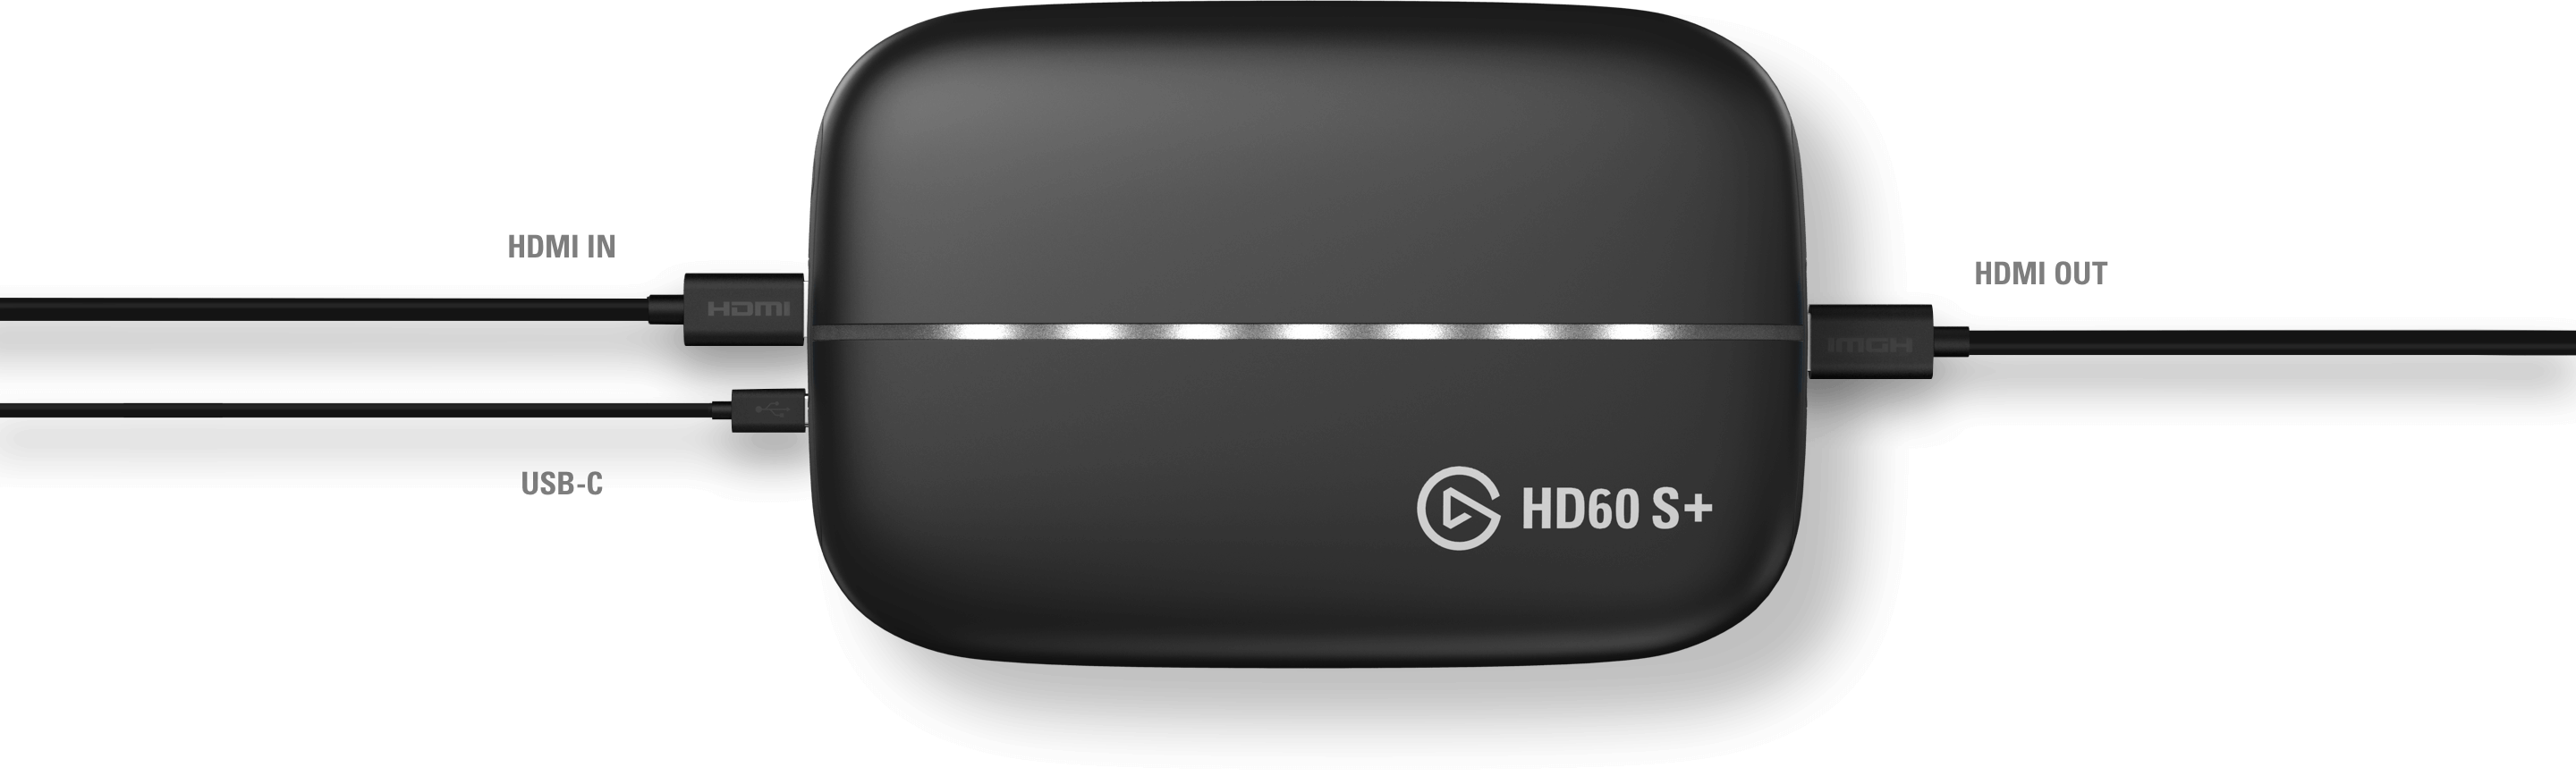 elgato HD60 SGame